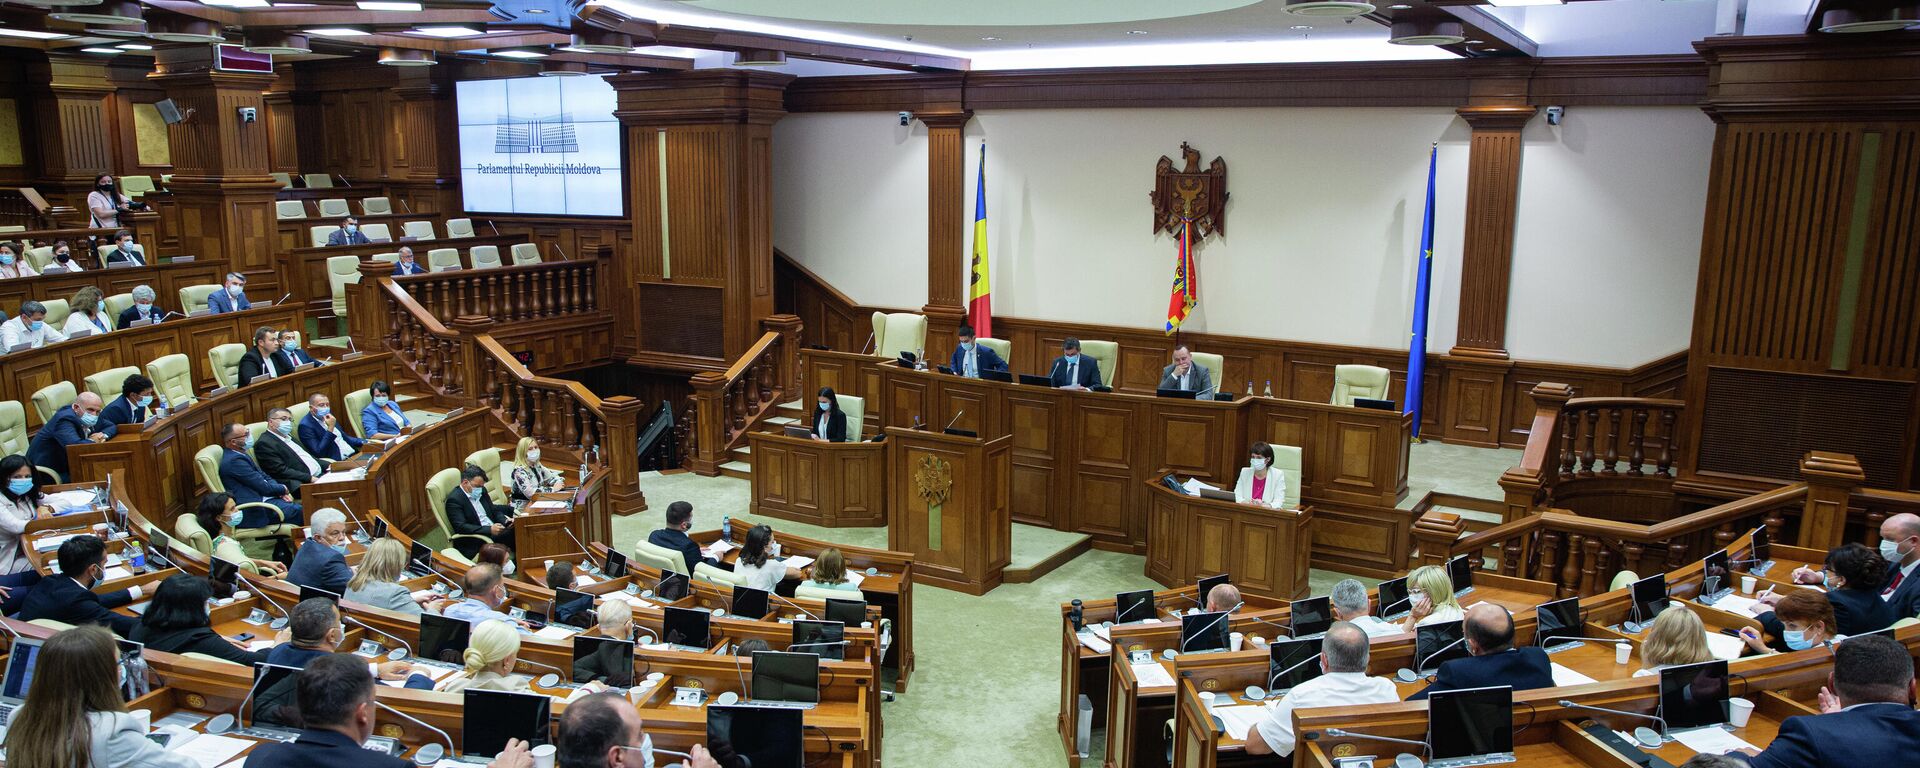 Deputați în Parlamentul Republicii Moldova  - Sputnik Moldova, 1920, 25.11.2021